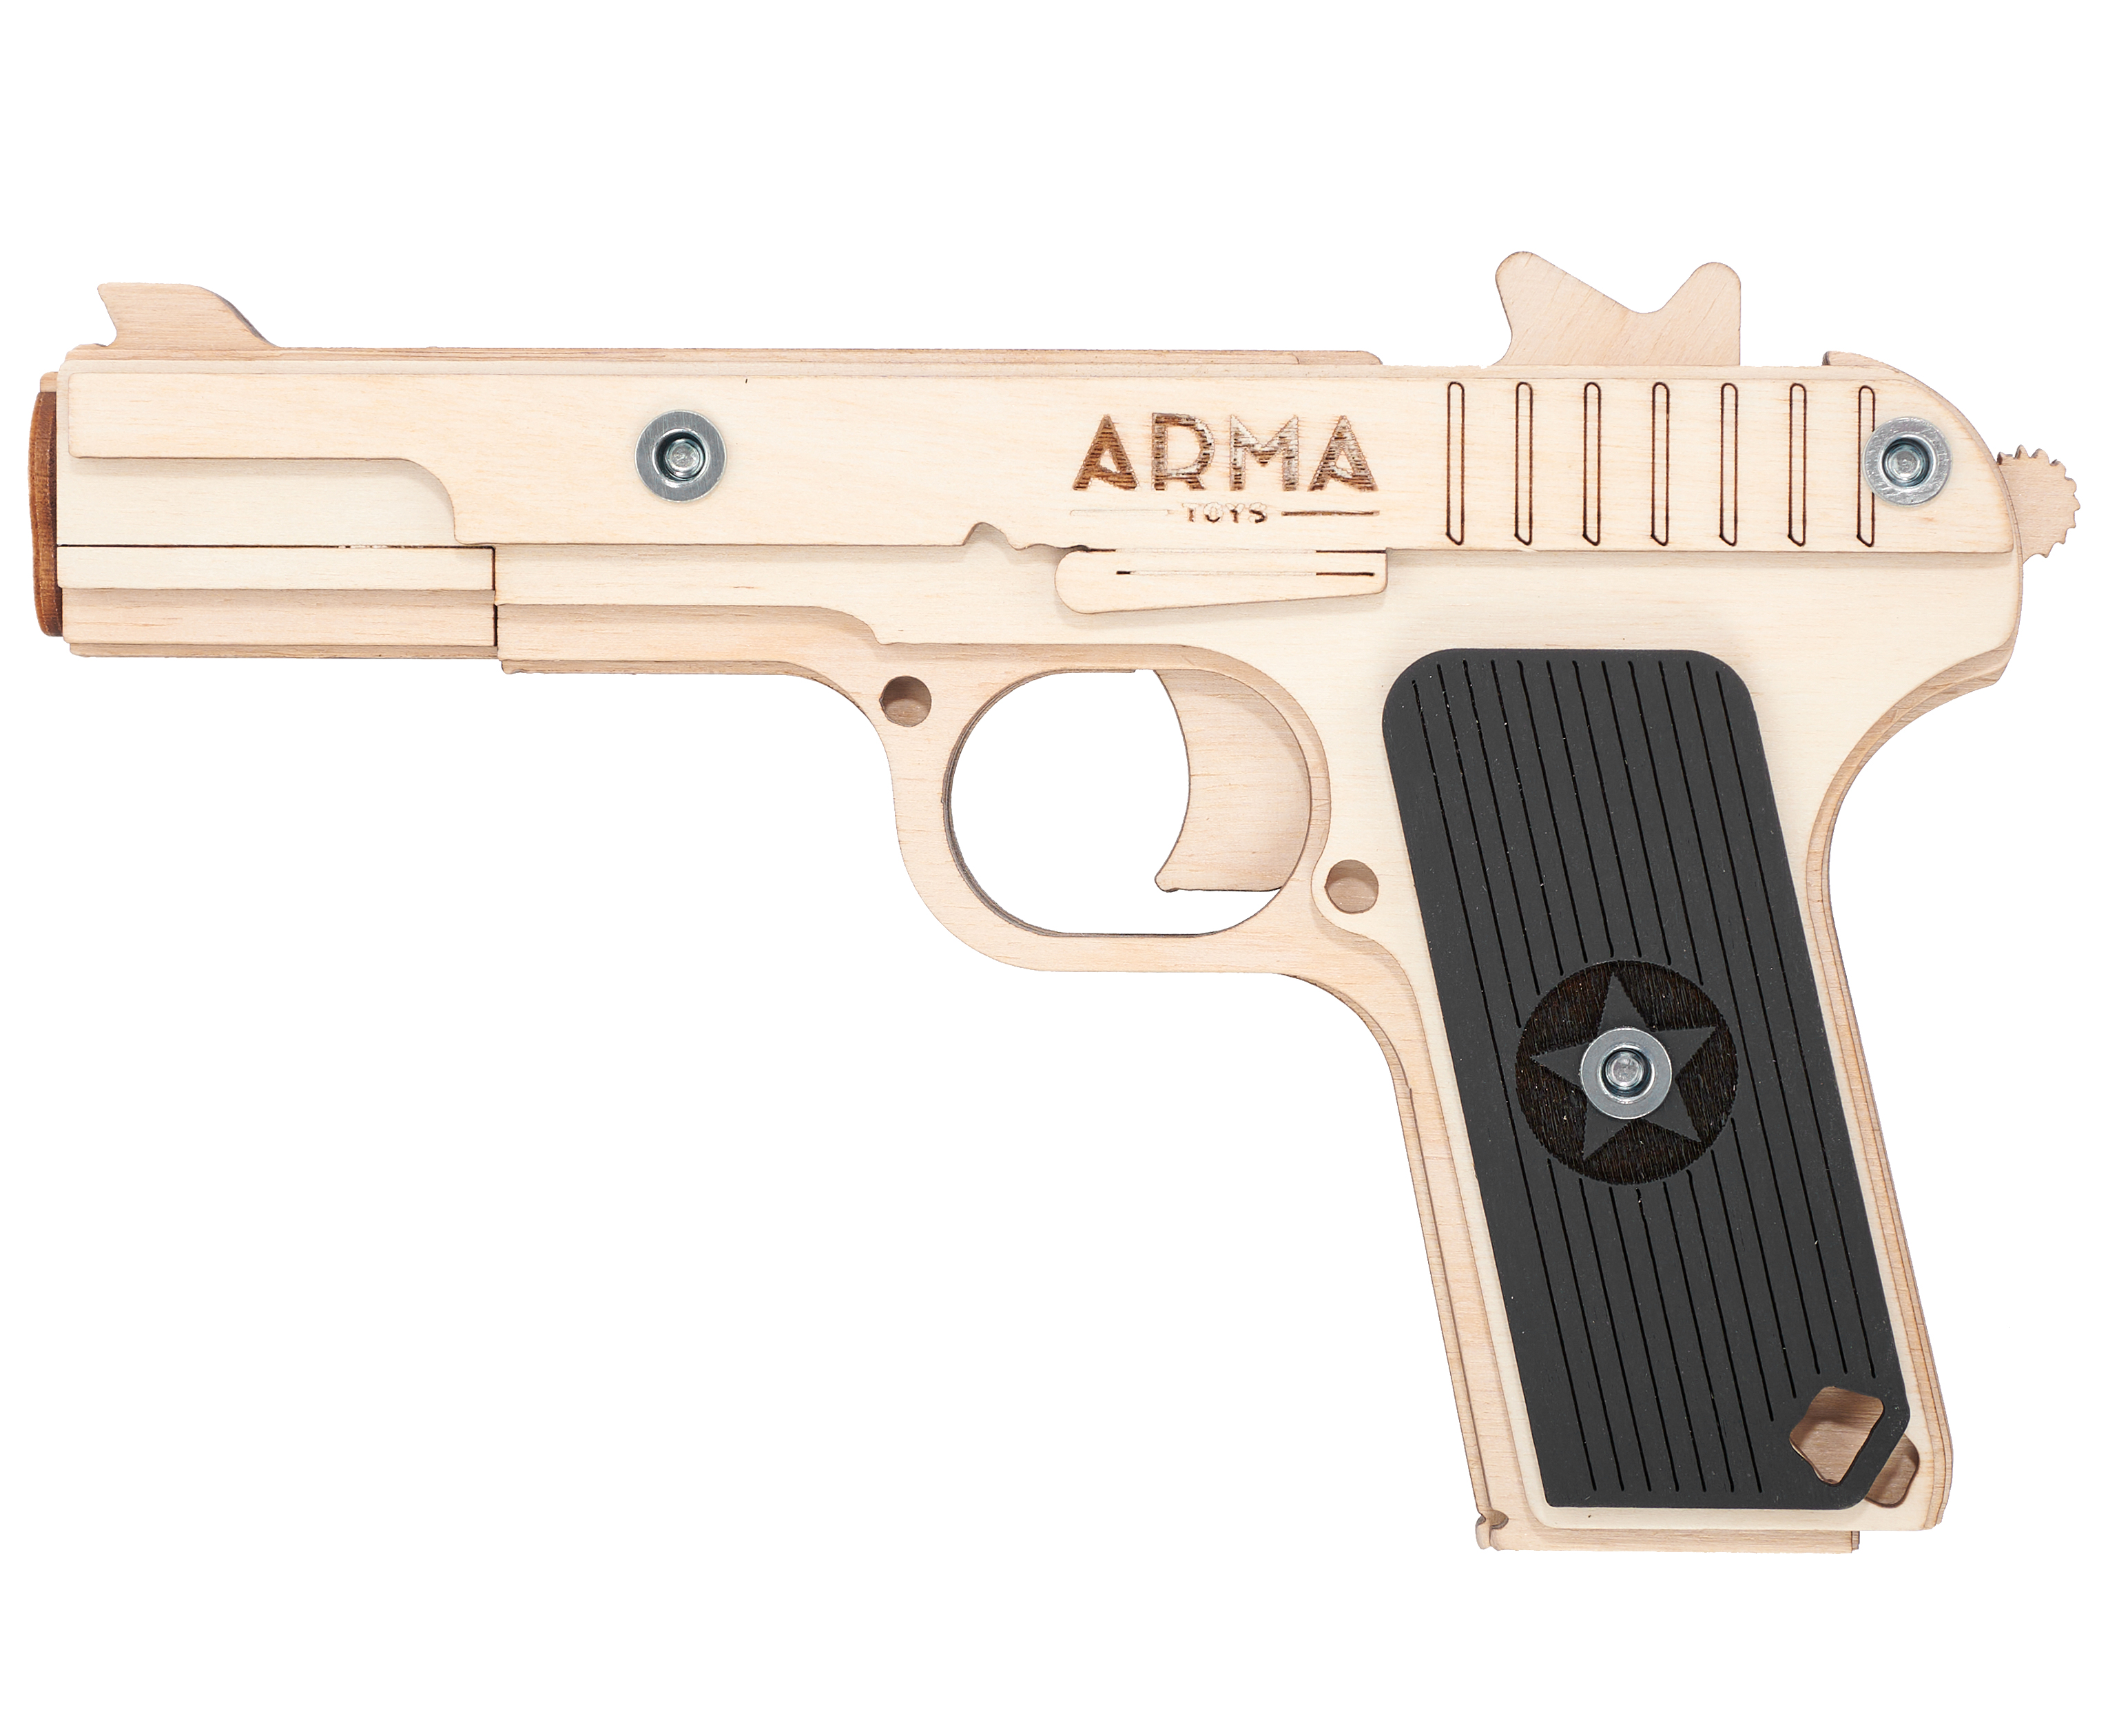 Резинкострел игрушечный Arma toys пистолет ТТ макет, Токарев, AT019 резинкострел arma toys пистолет desert eagle макет окрашенный at010k